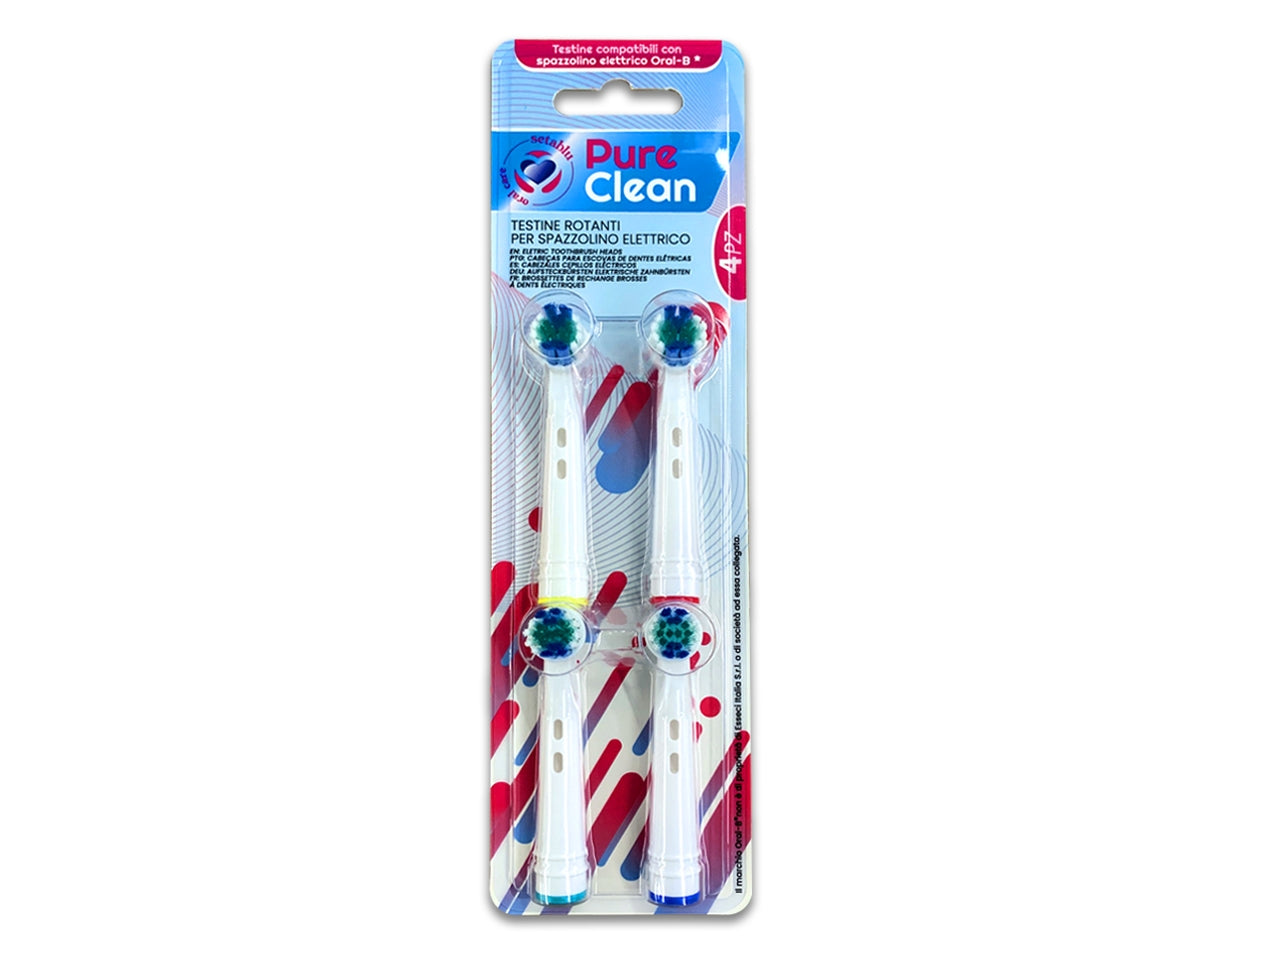 Testine per spazzolino elettrico pure clea - la confezione contiene 4 testine